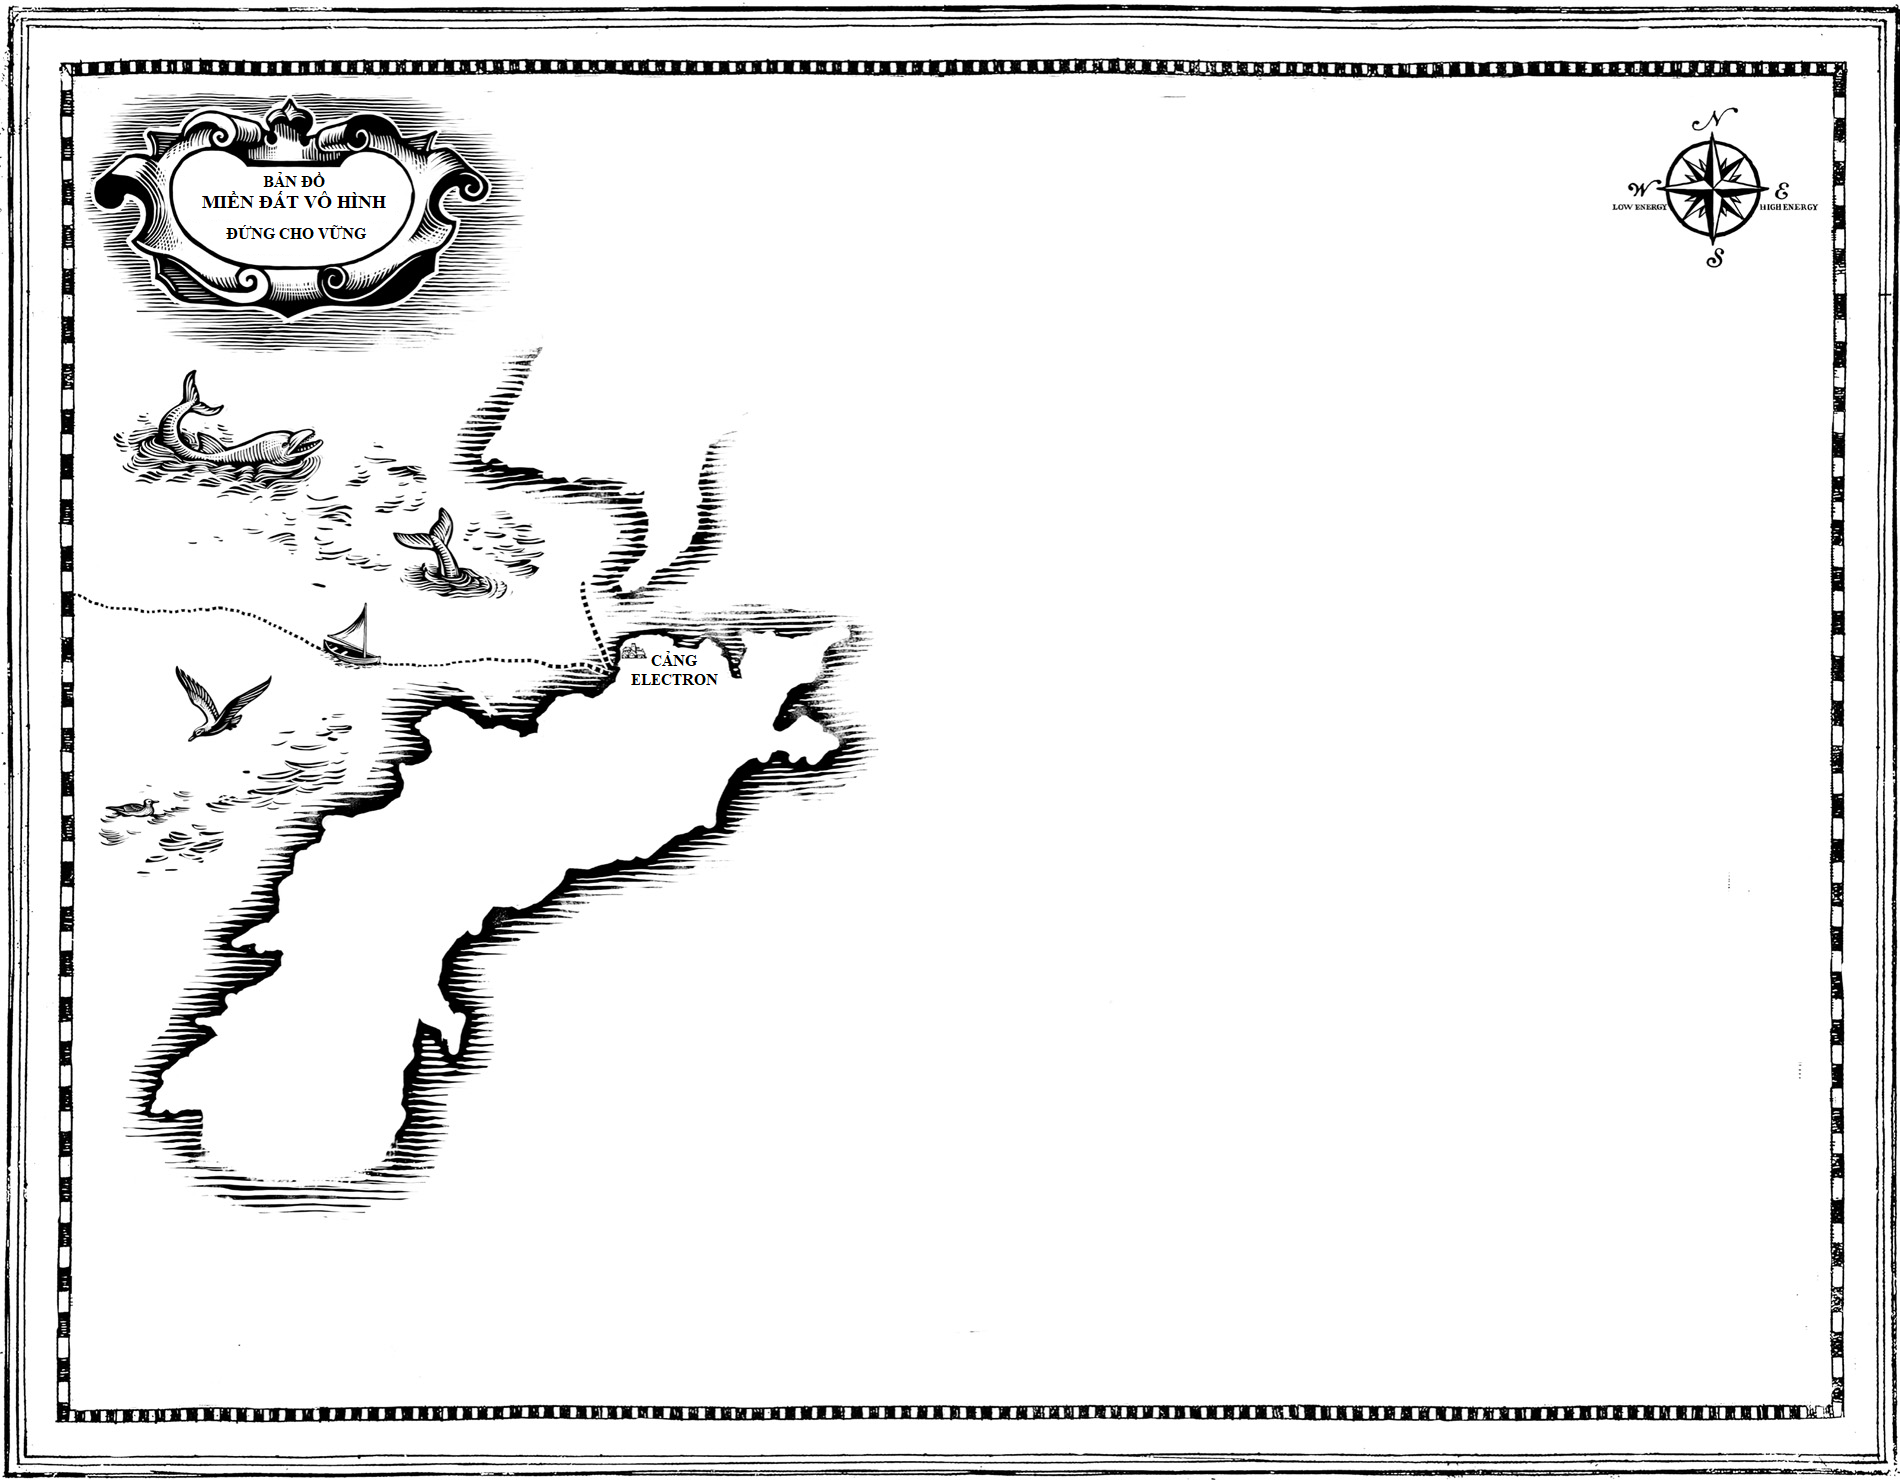 Bản đồ Miền đất Vô hình - Phần 3